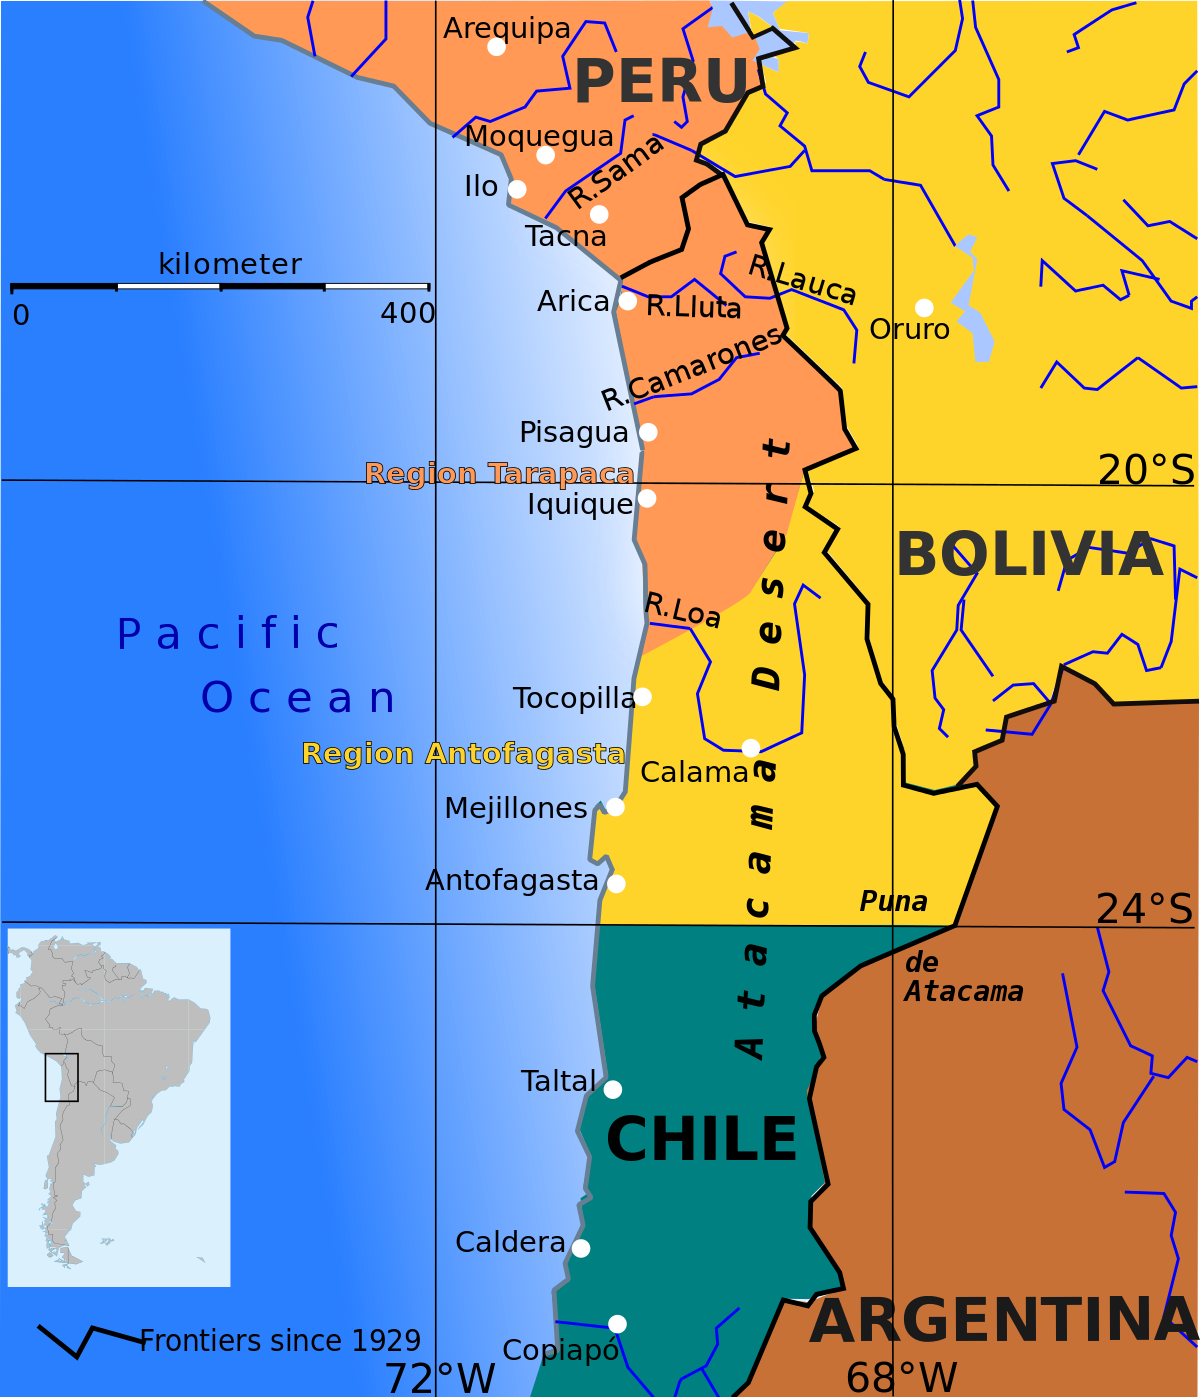 Los intereses capitalistas y el Mar de Bolívia